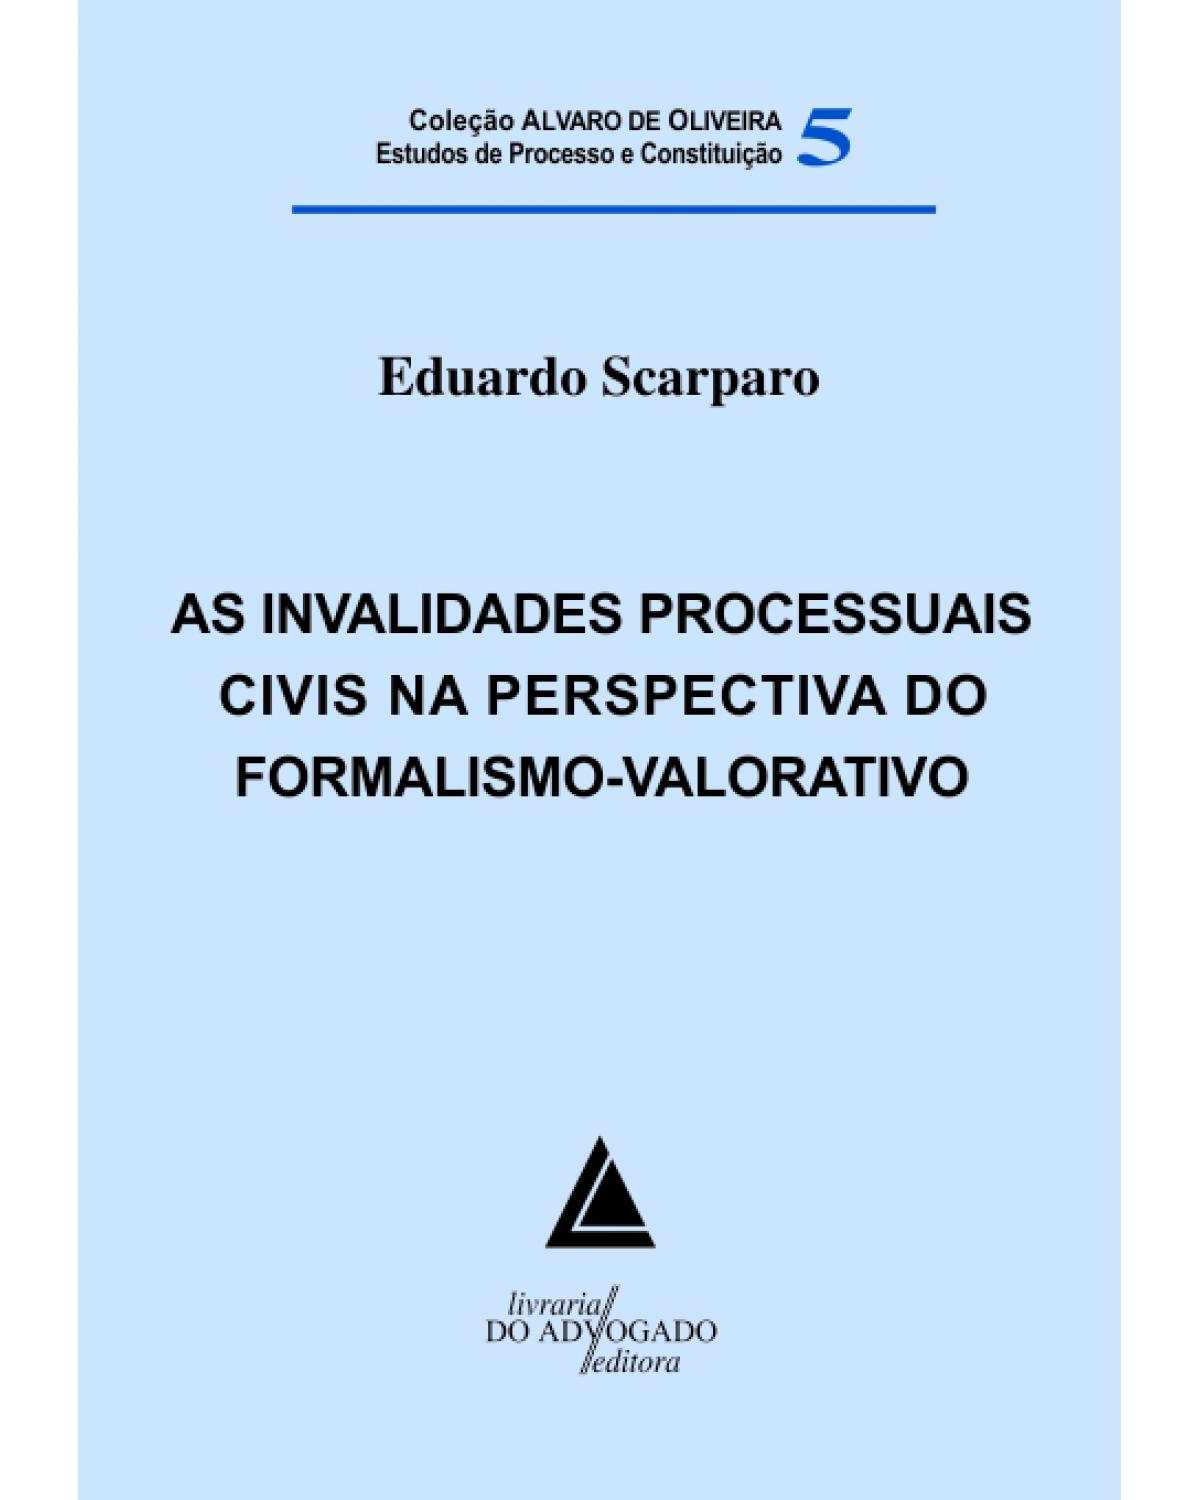 As invalidades processuais civis na perspectiva do formalismo-valorativo - Volume 5:  - 1ª Edição | 2013